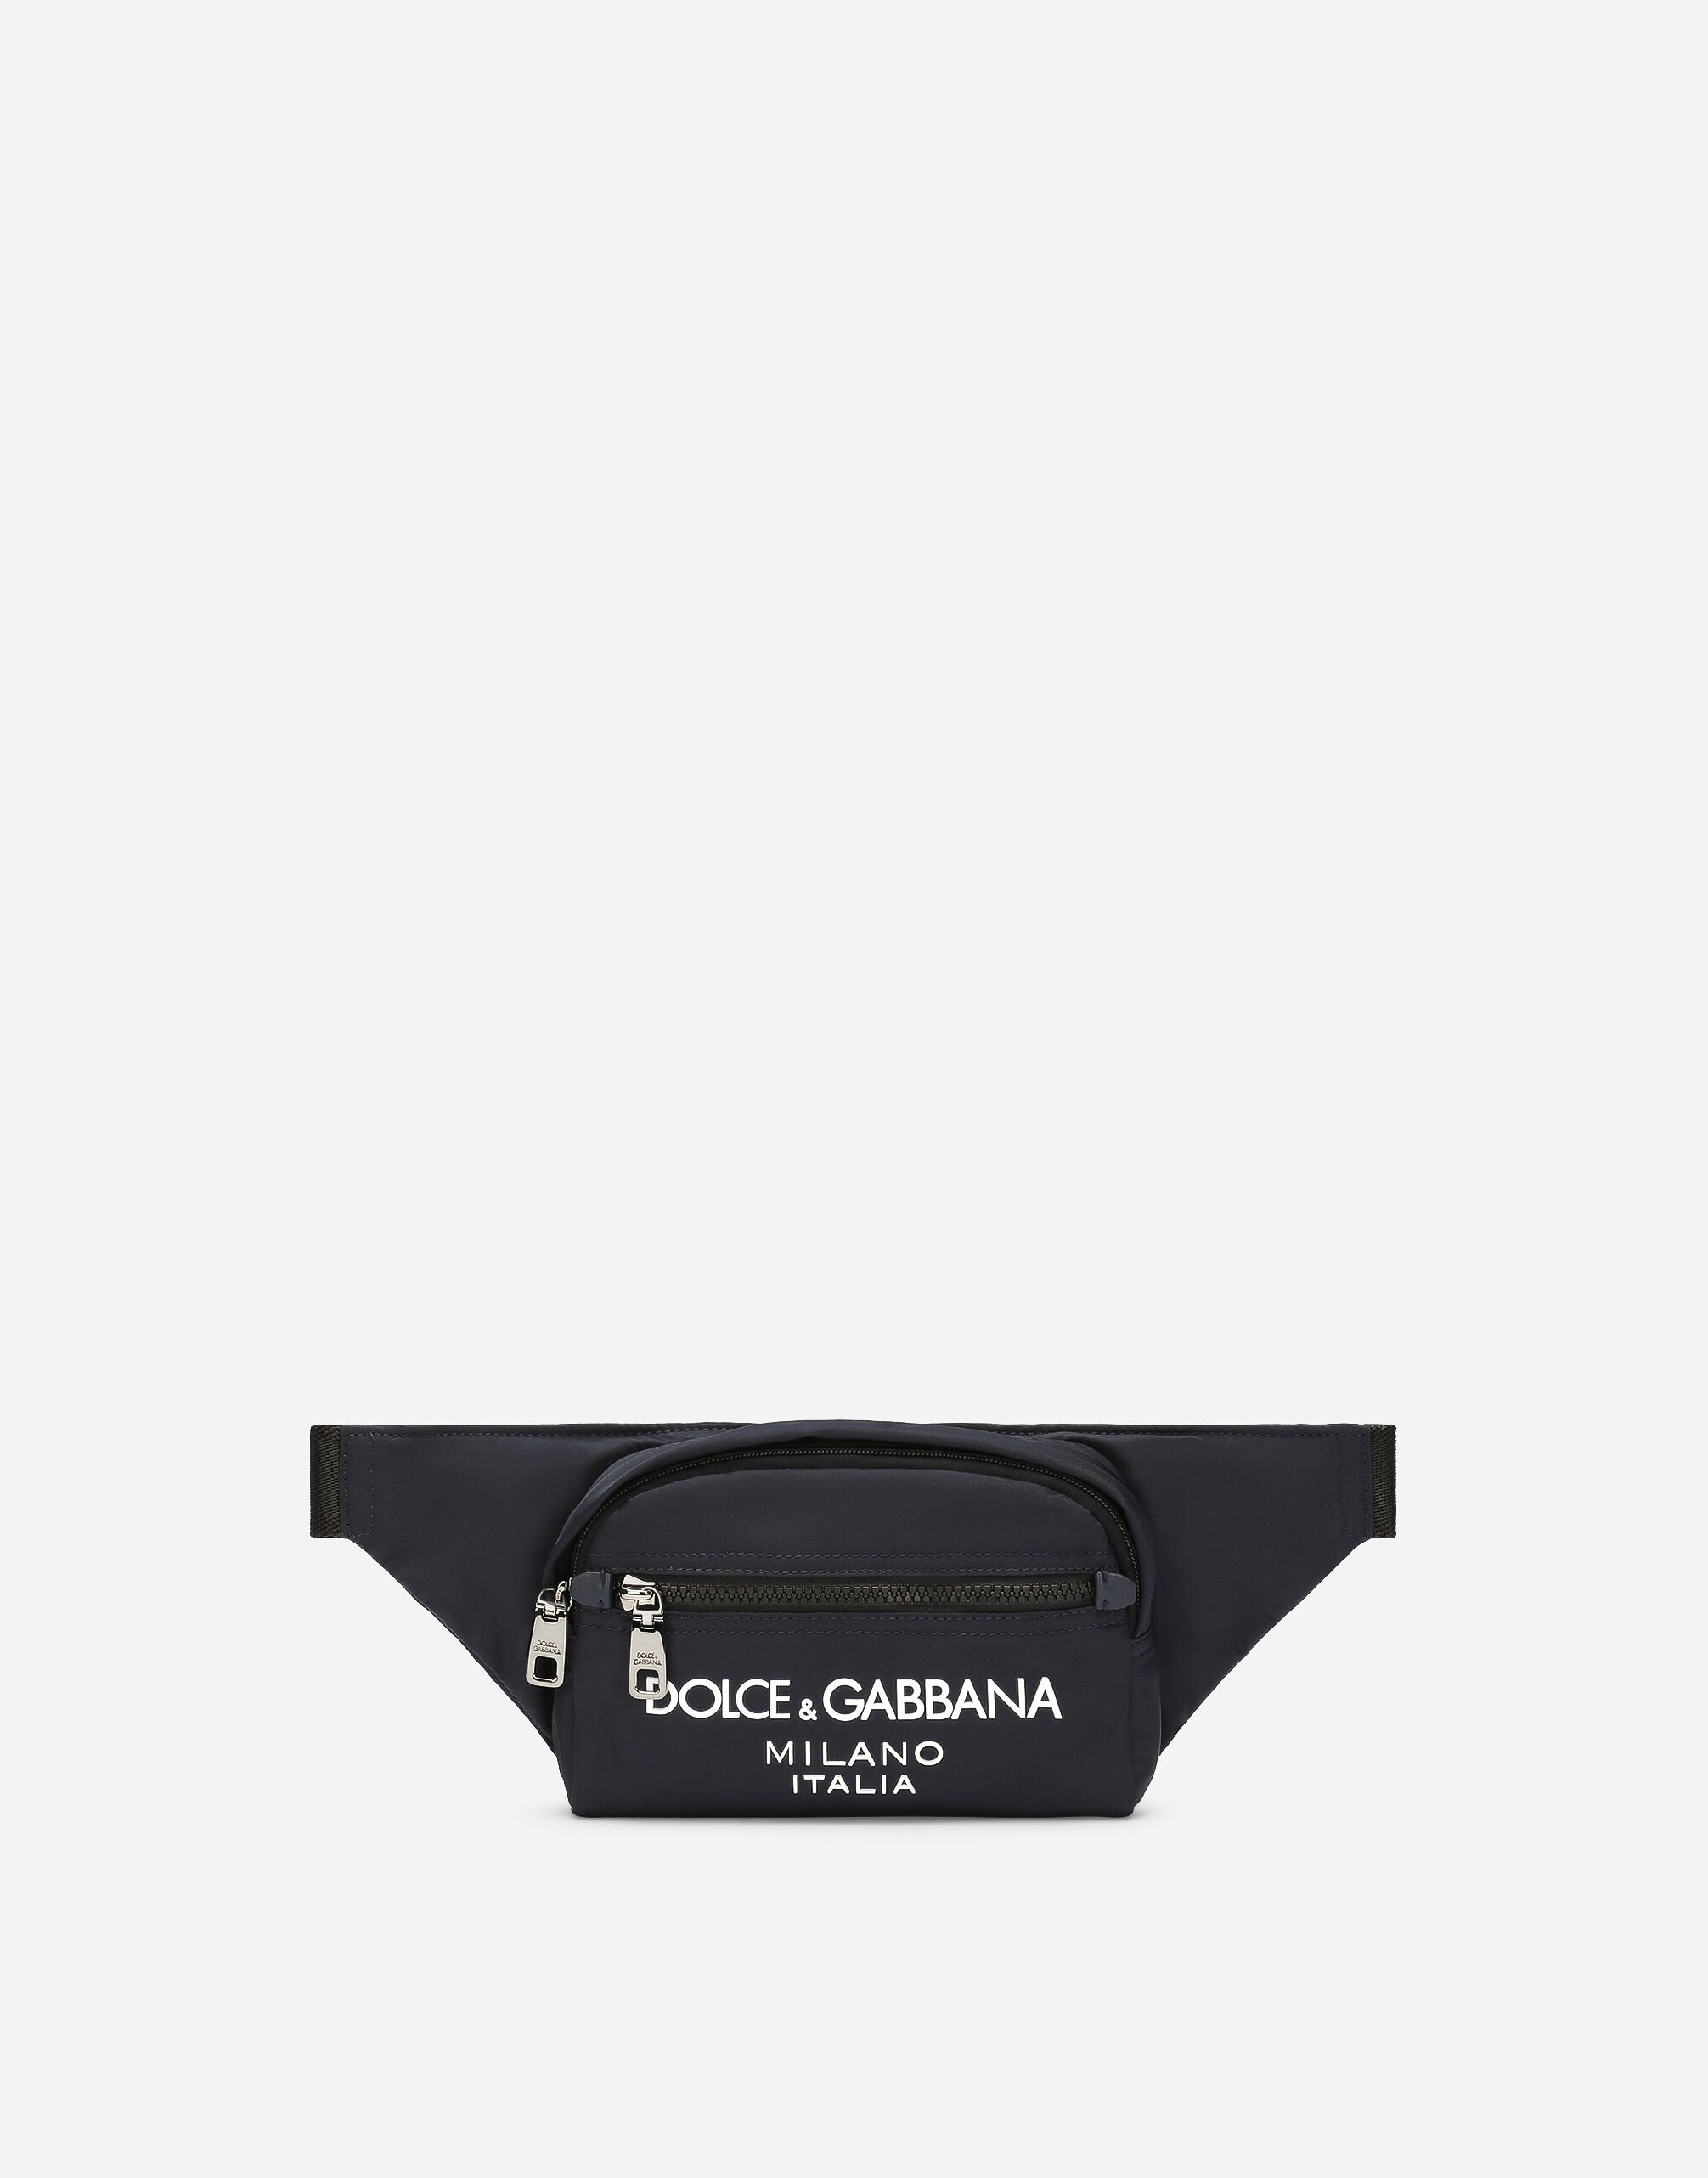 Dolce & Gabbana Sac banane petit format en nylon Noir BM2331A8034